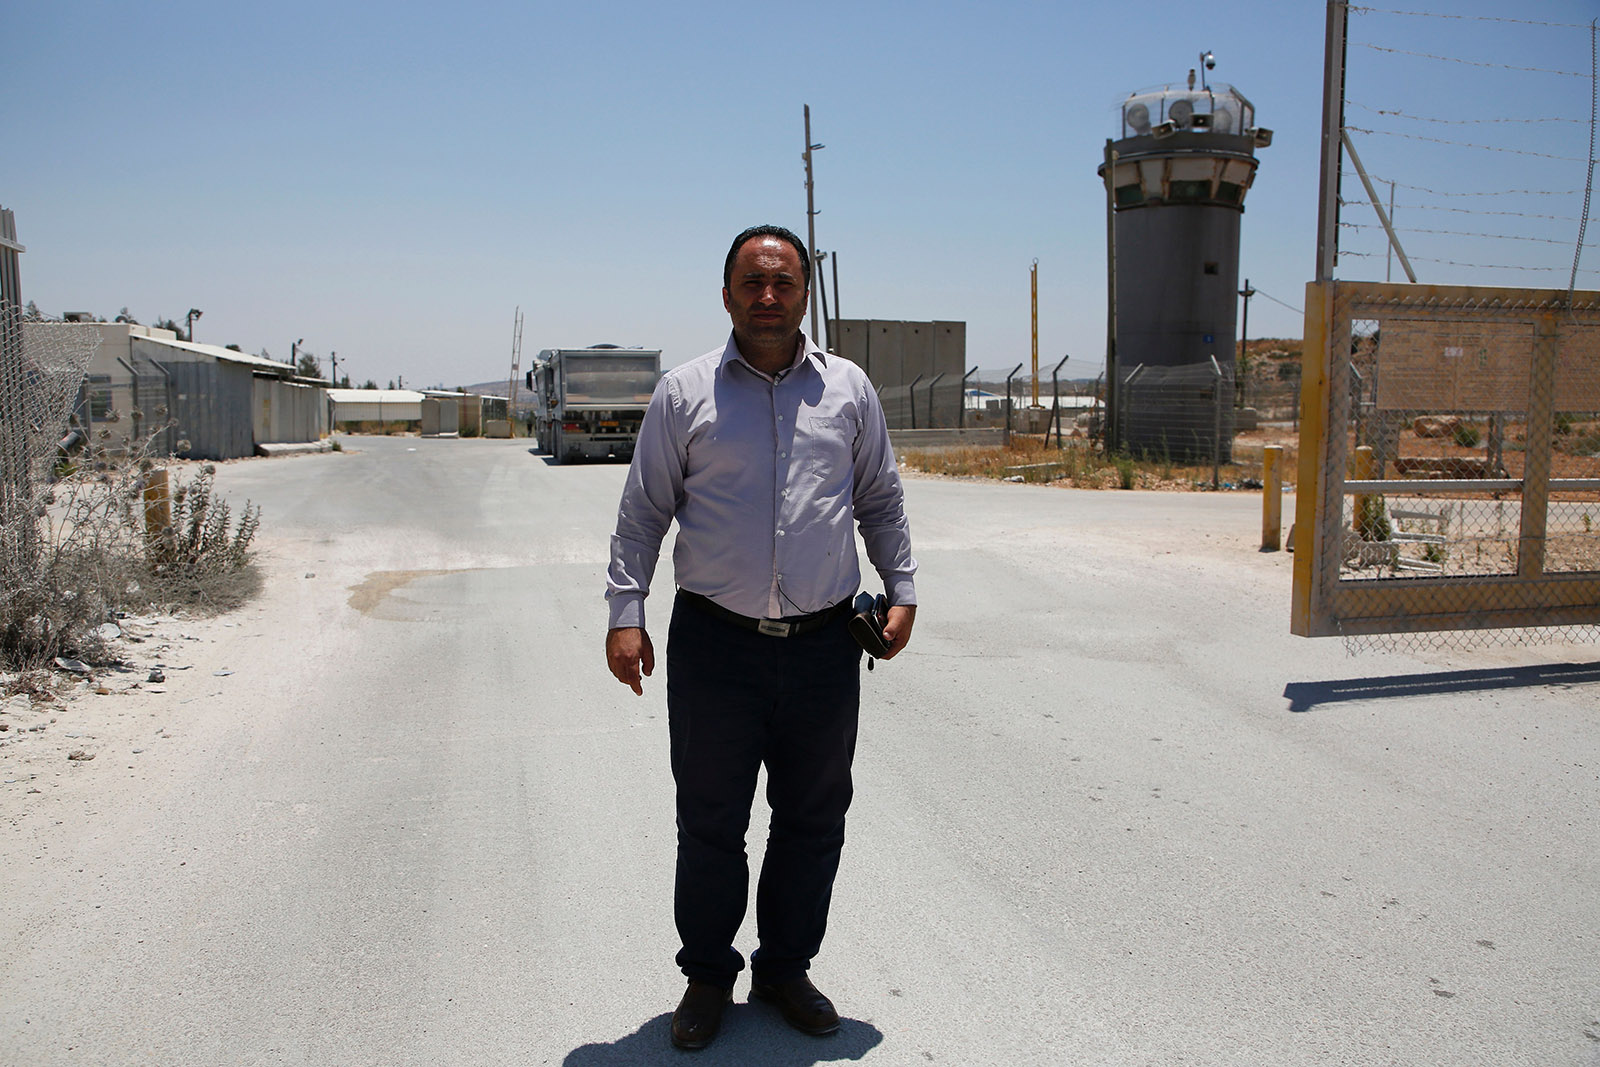 Un Palestinese al tribunale militare israeliano: Issa Amro, il giudice ed io.